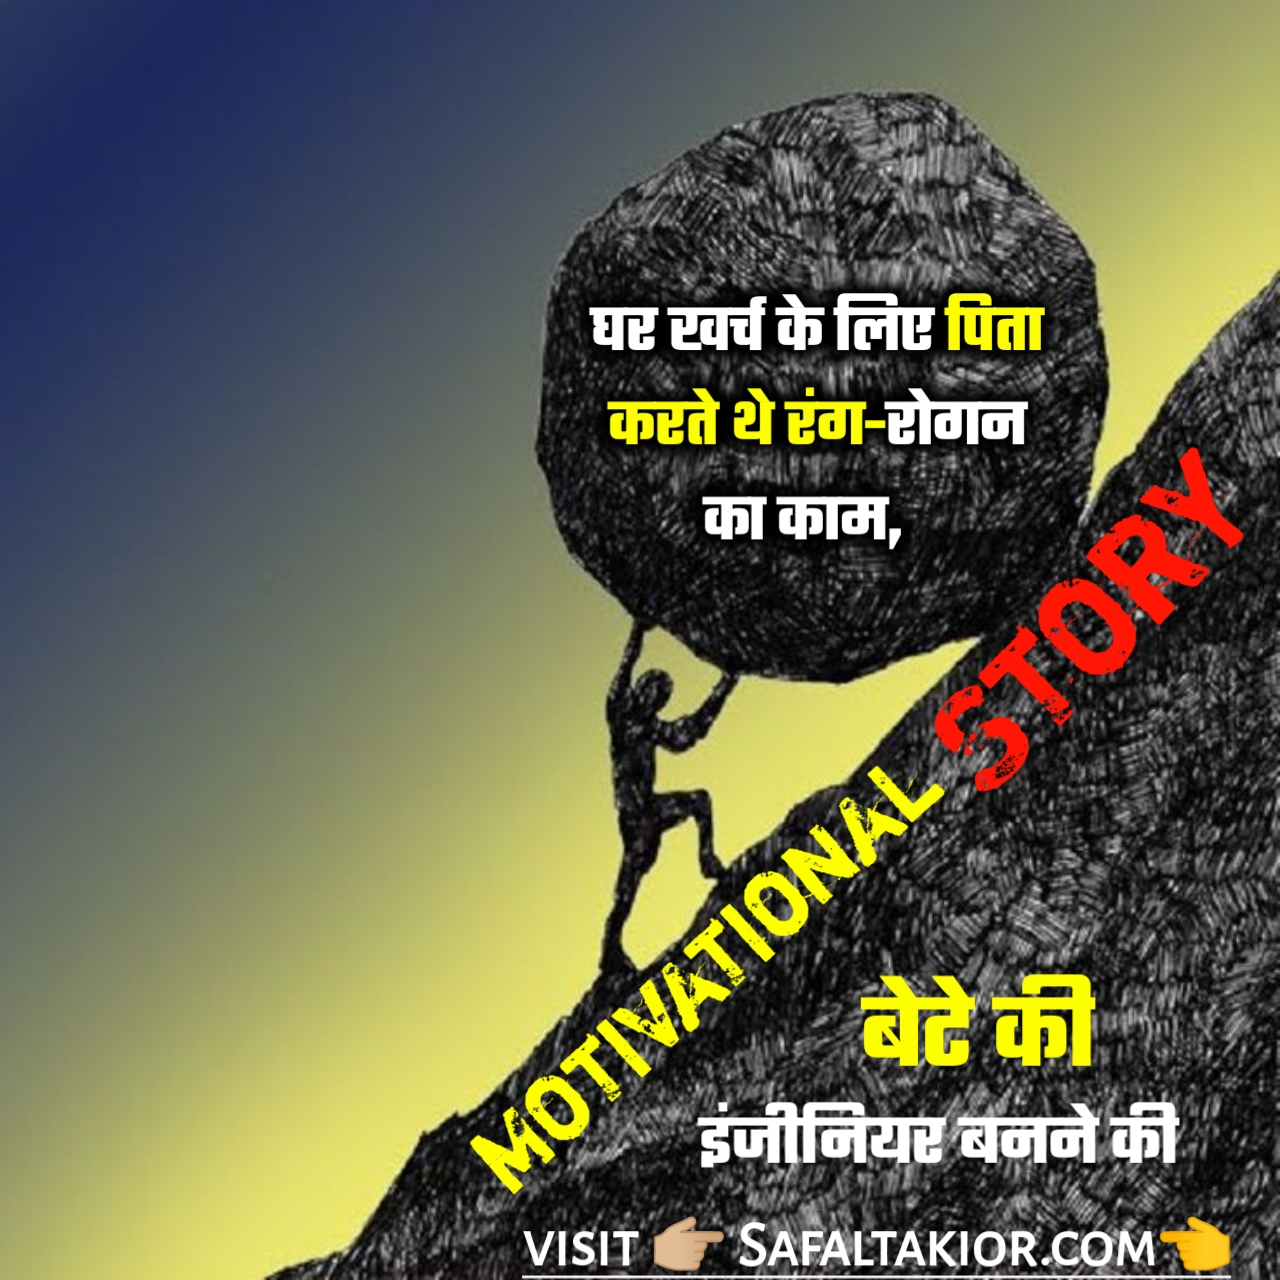 संघर्ष से सफलता की कहानी Successful Story Hindi -Success stories in Hindi